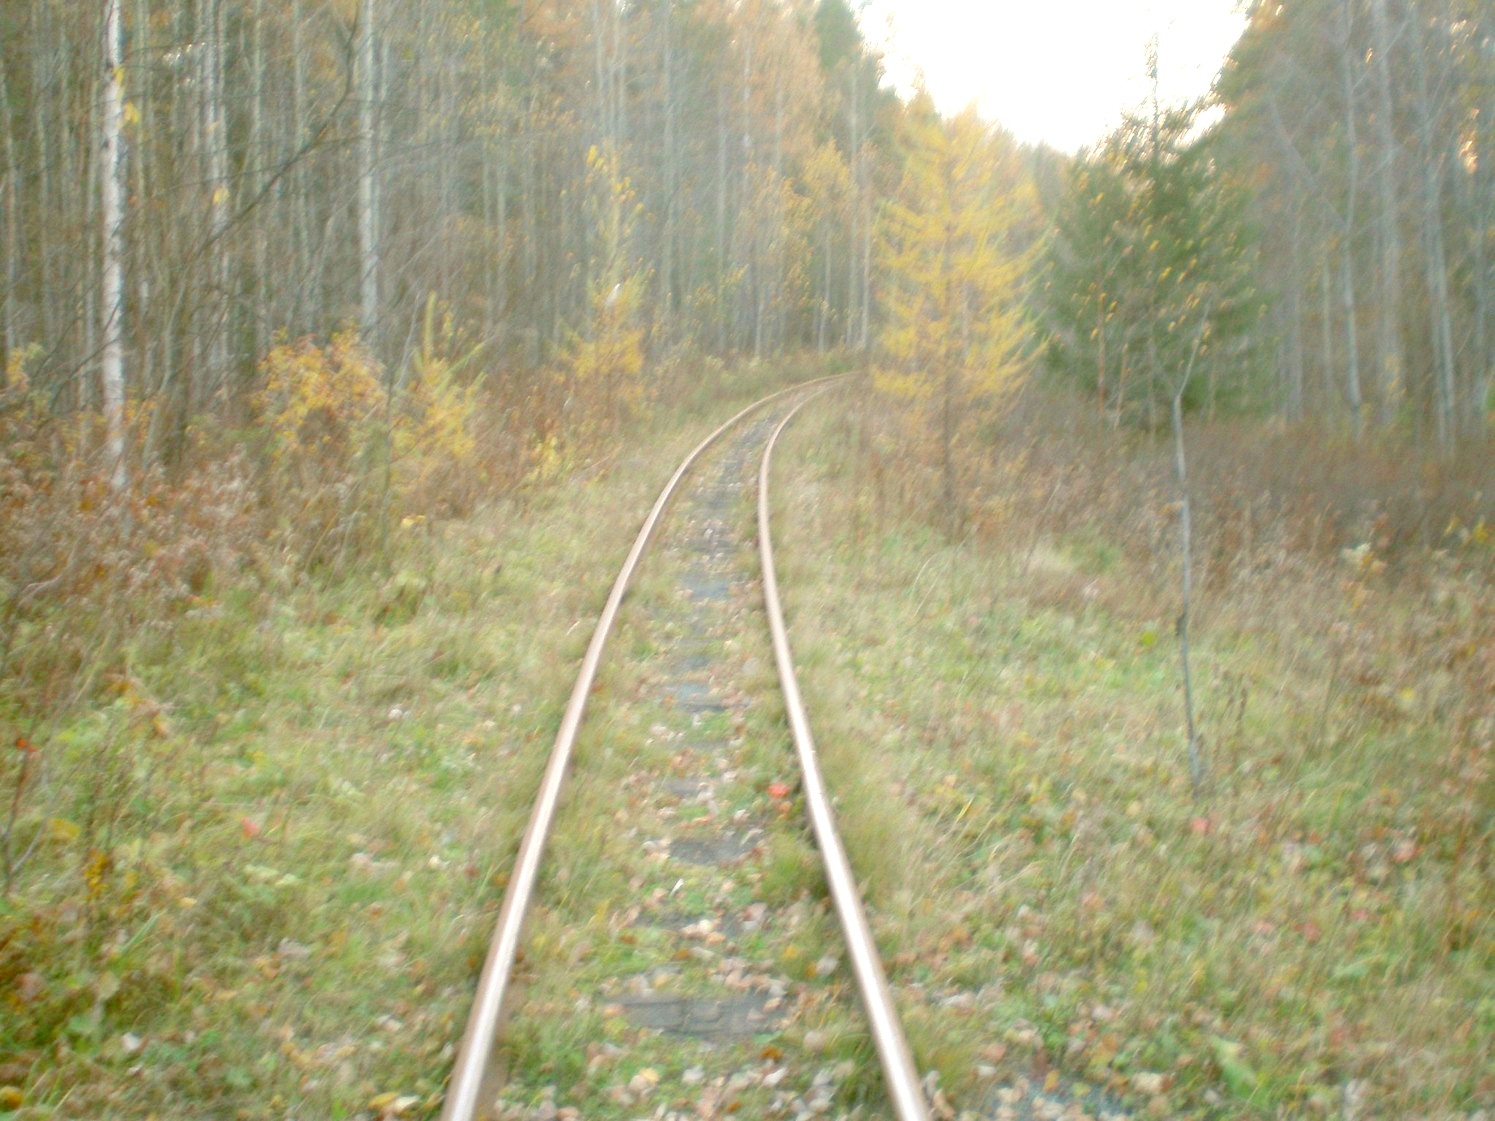 Висимо-Уткинская узкоколейная железная дорога  — фотографии, сделанные в 2007 году (часть 15)